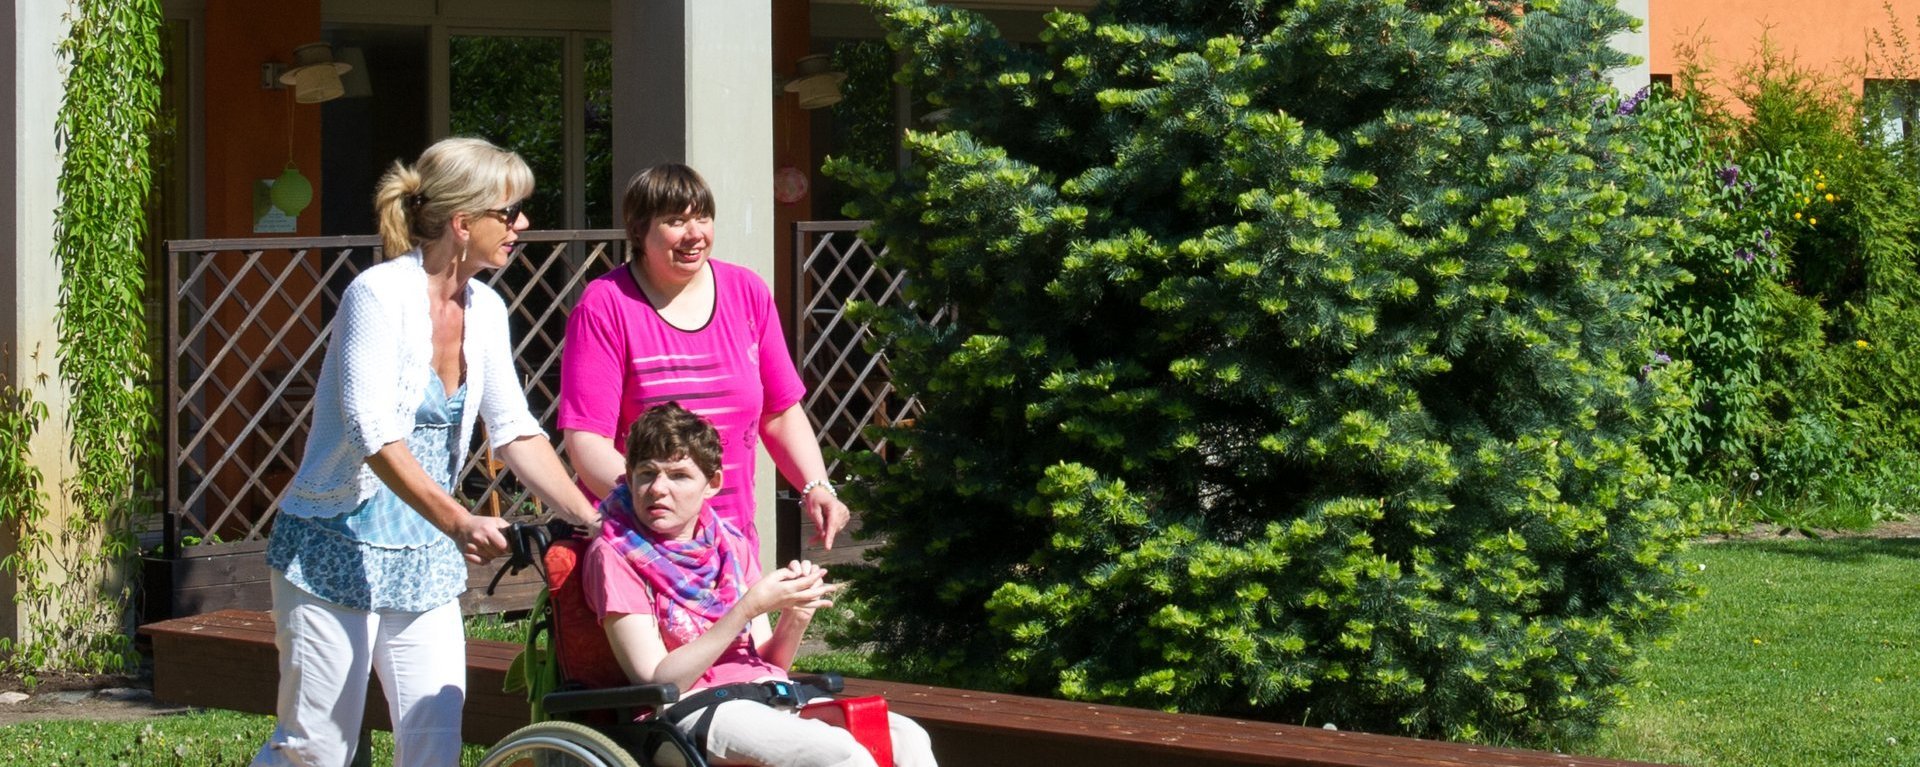 schönes Wetter: eine Betreuerin schiebt eine Frau im Rollstuhl und unterält sich mit einer weiteren Frau